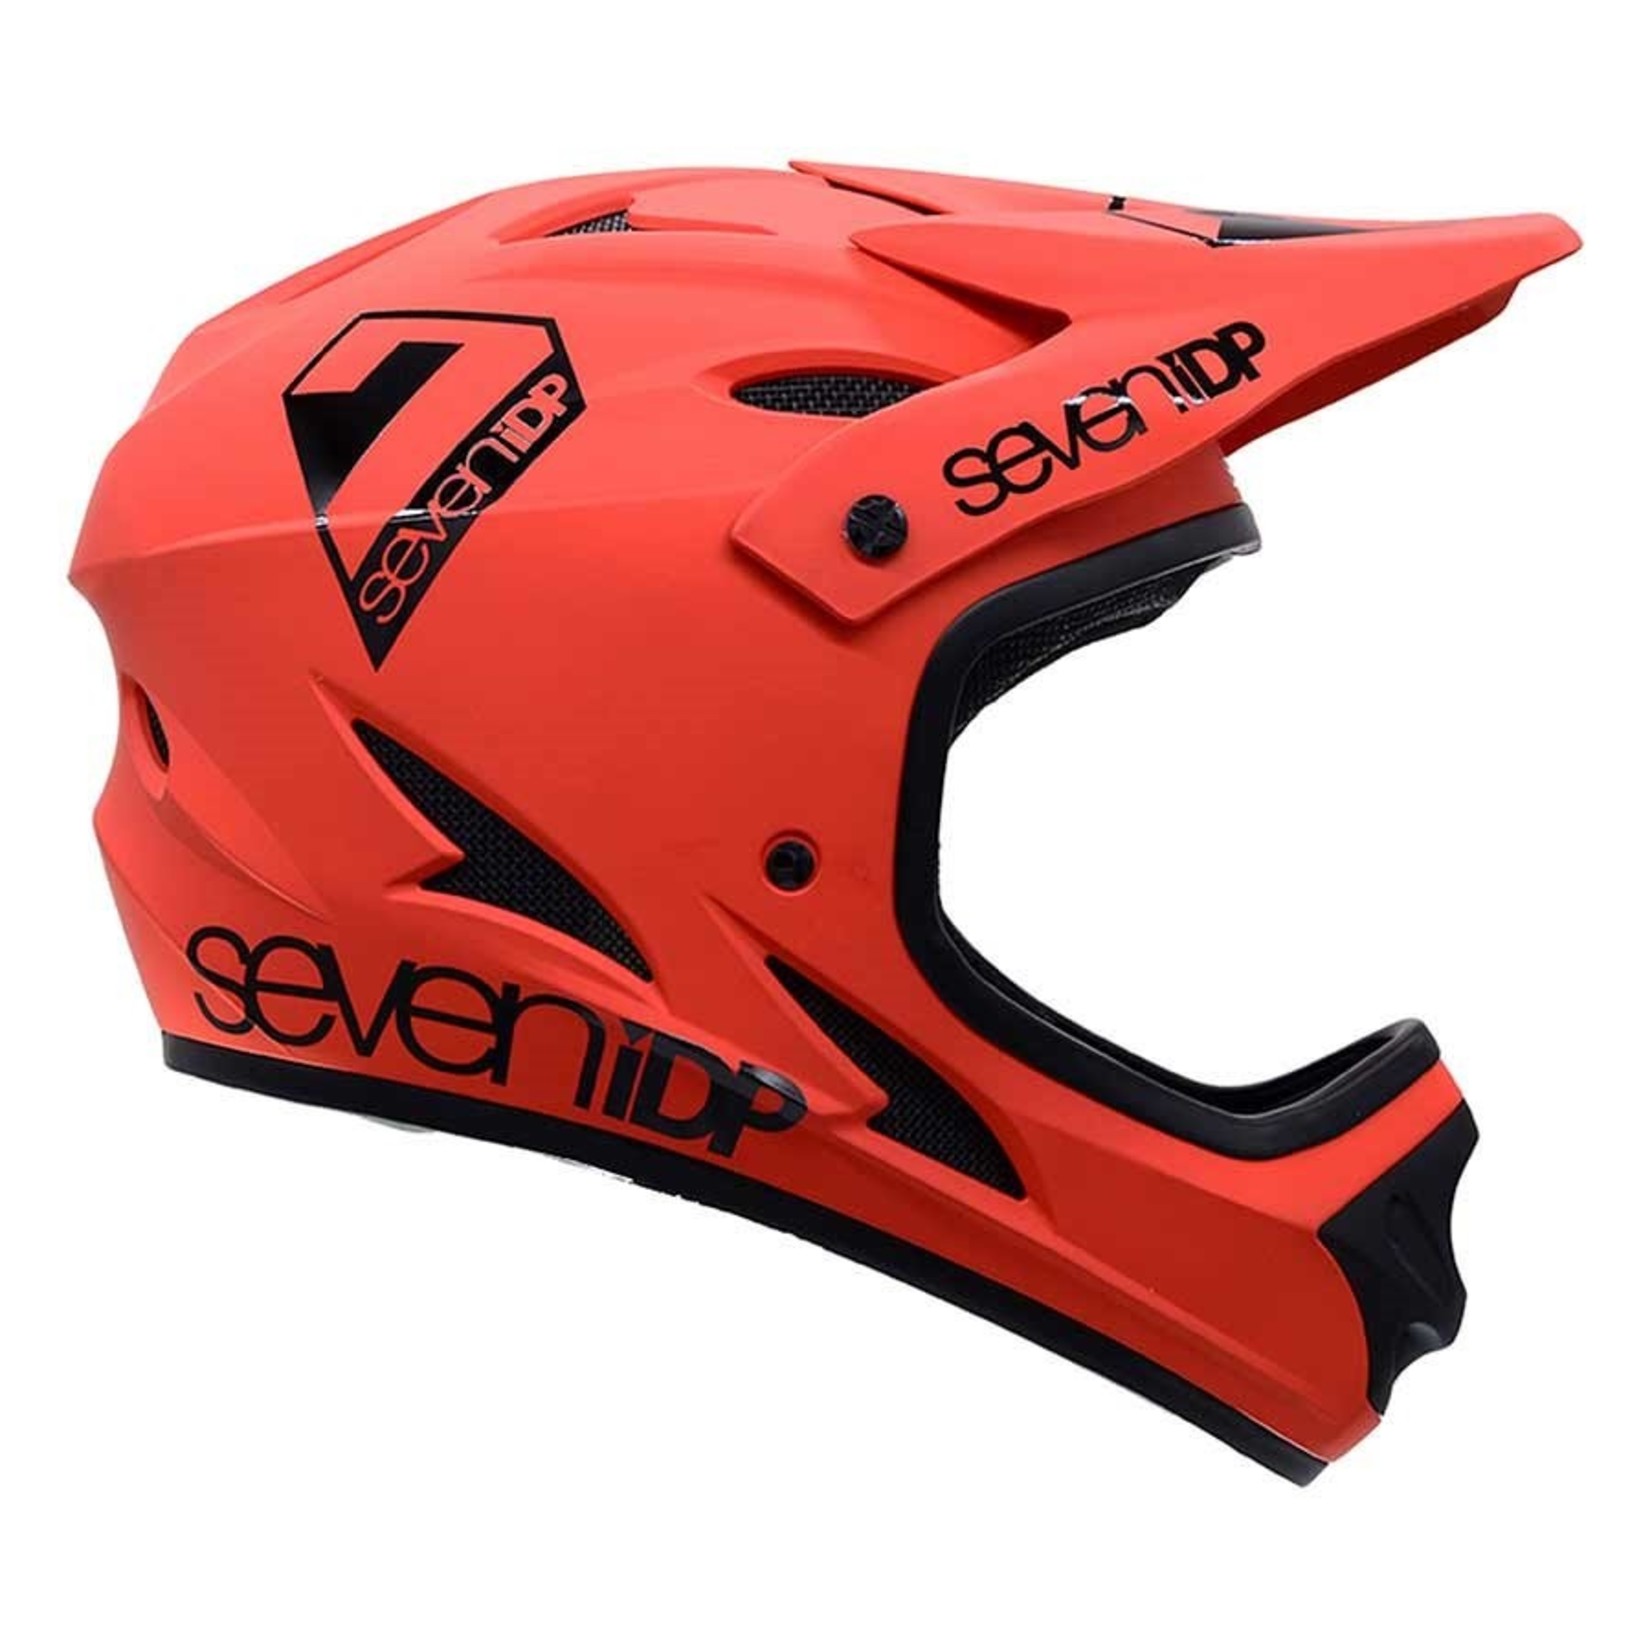 7iDP 7iDP, M1, Full Face Helmet, Matt Thruster Red/Black, L, 59 - 60cm